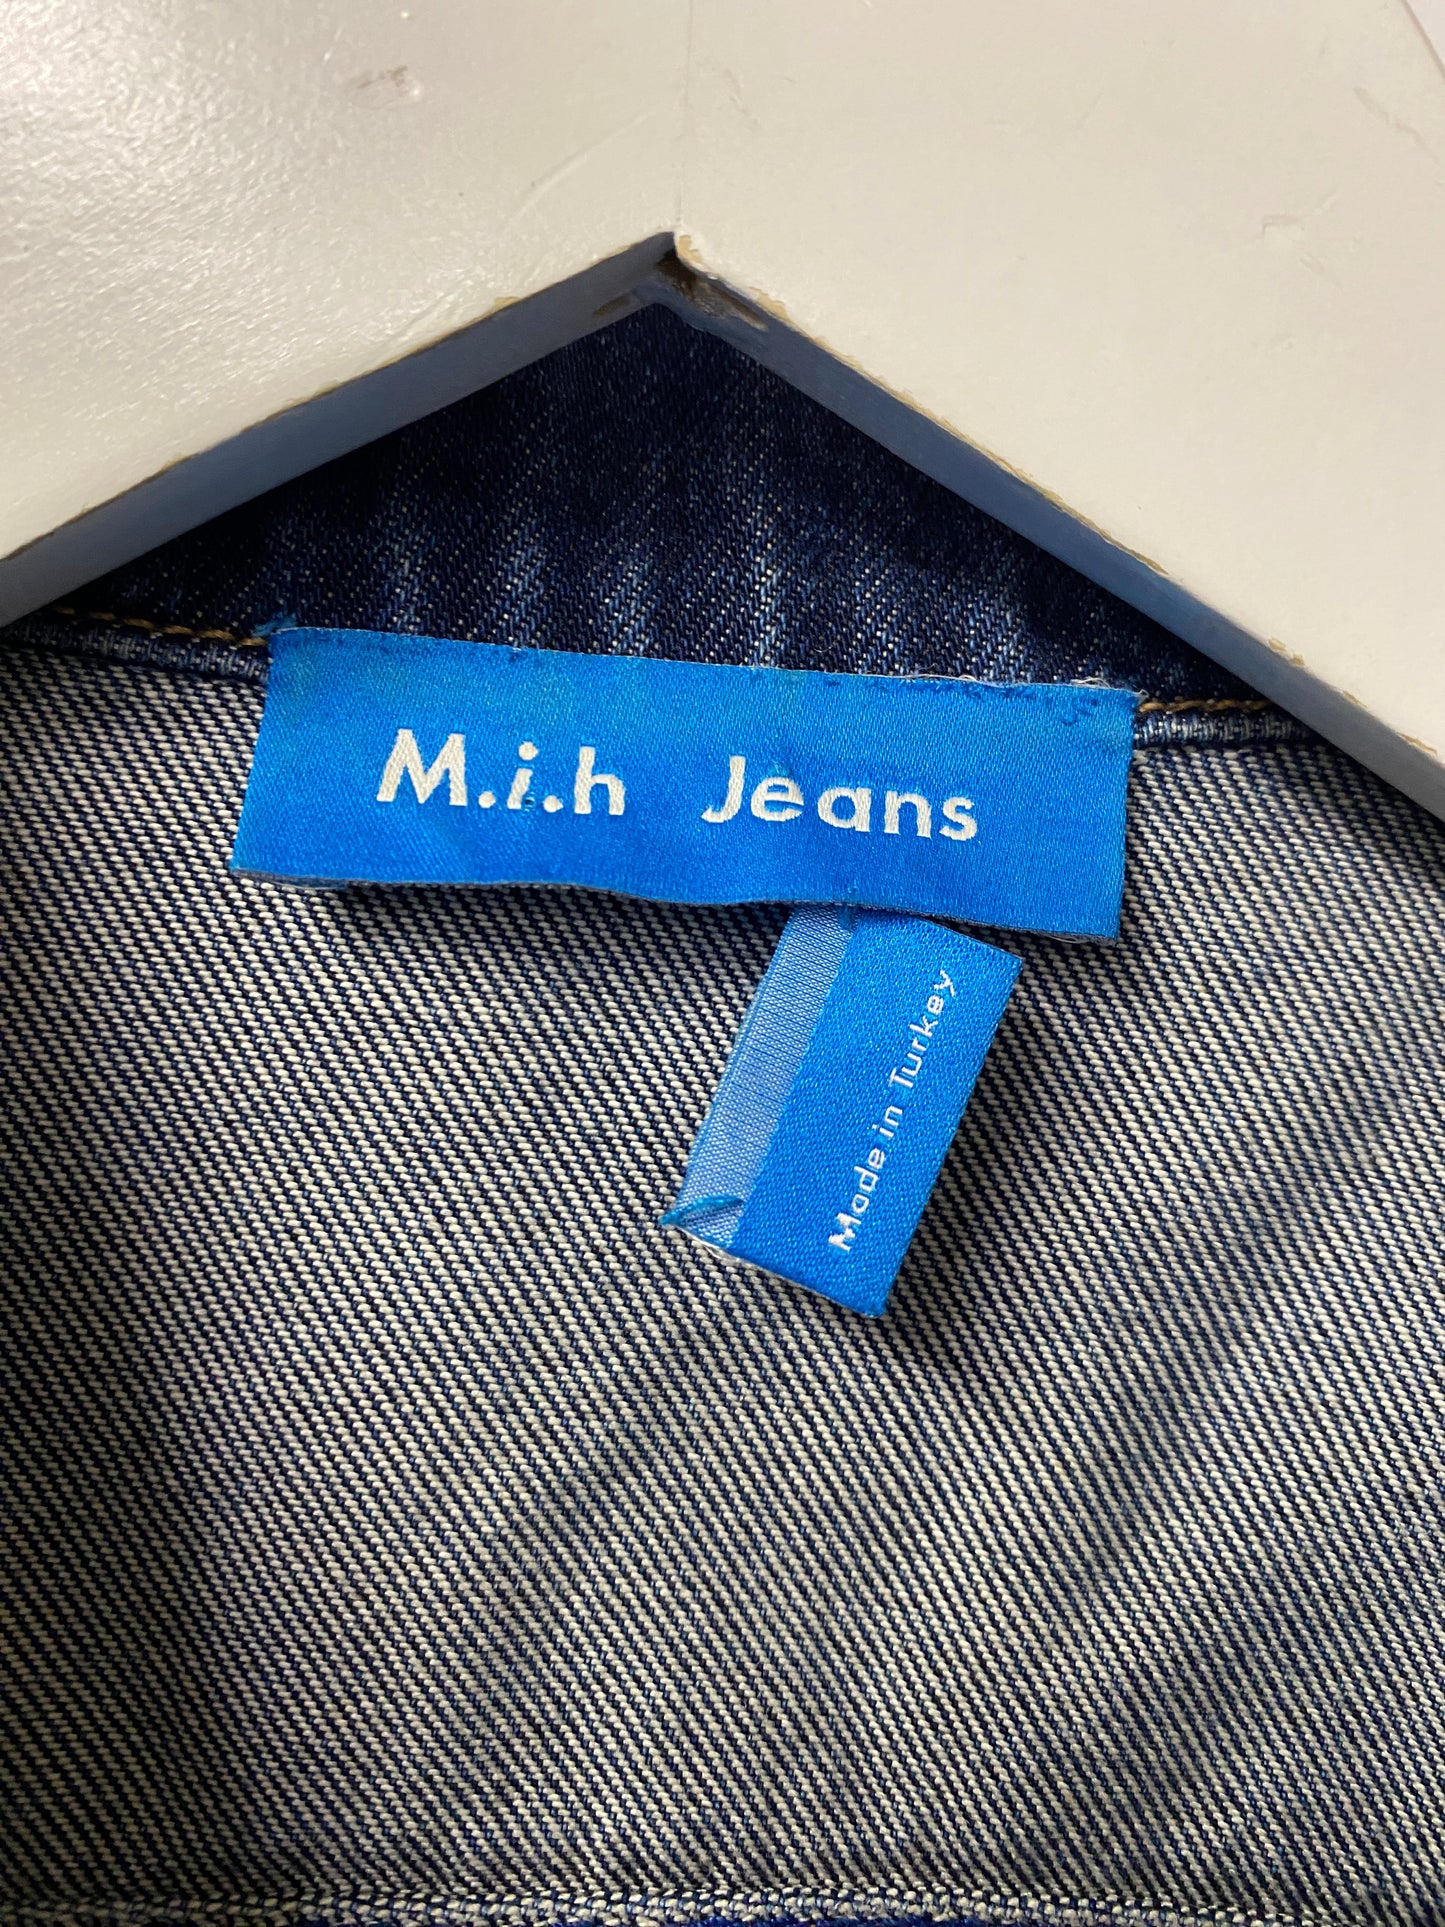 M.i.h Jeans Blue Denim Medium